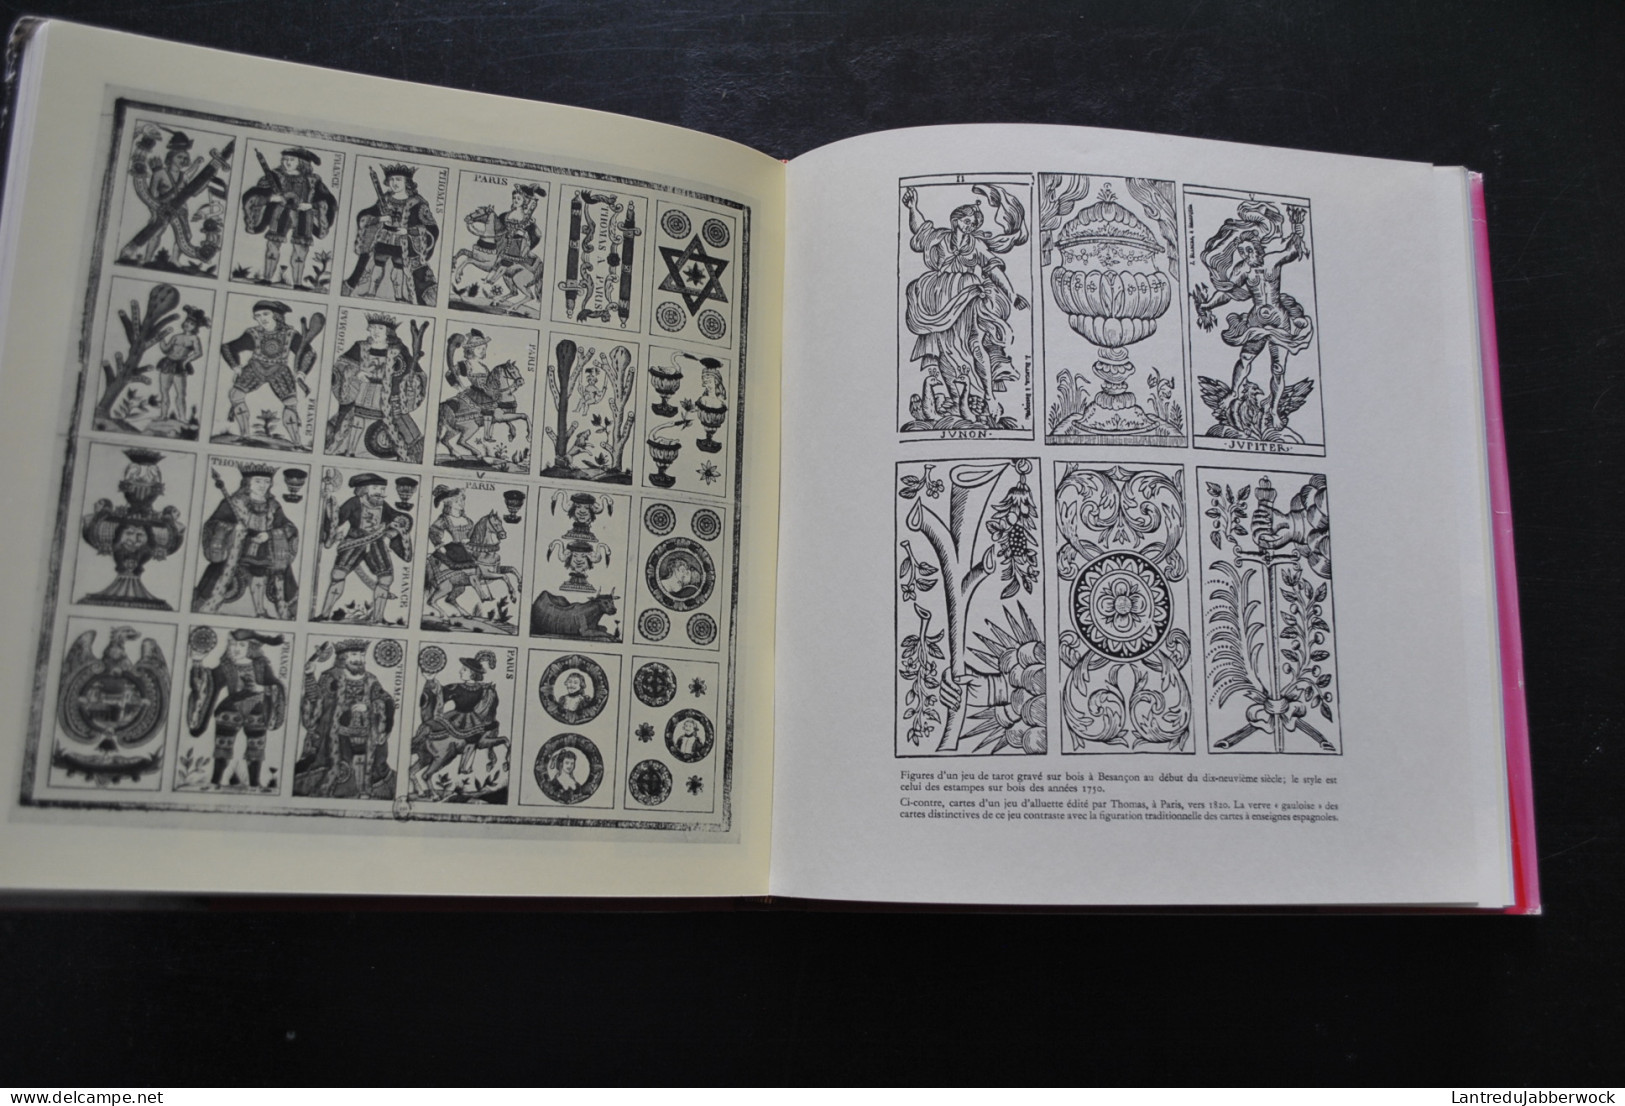 Jean-Pierre SEGUIN Le jeu de Carte Hermann 1968 Histoire Techniques de fabrication Symbolique Vocabulaire Fantaisie art